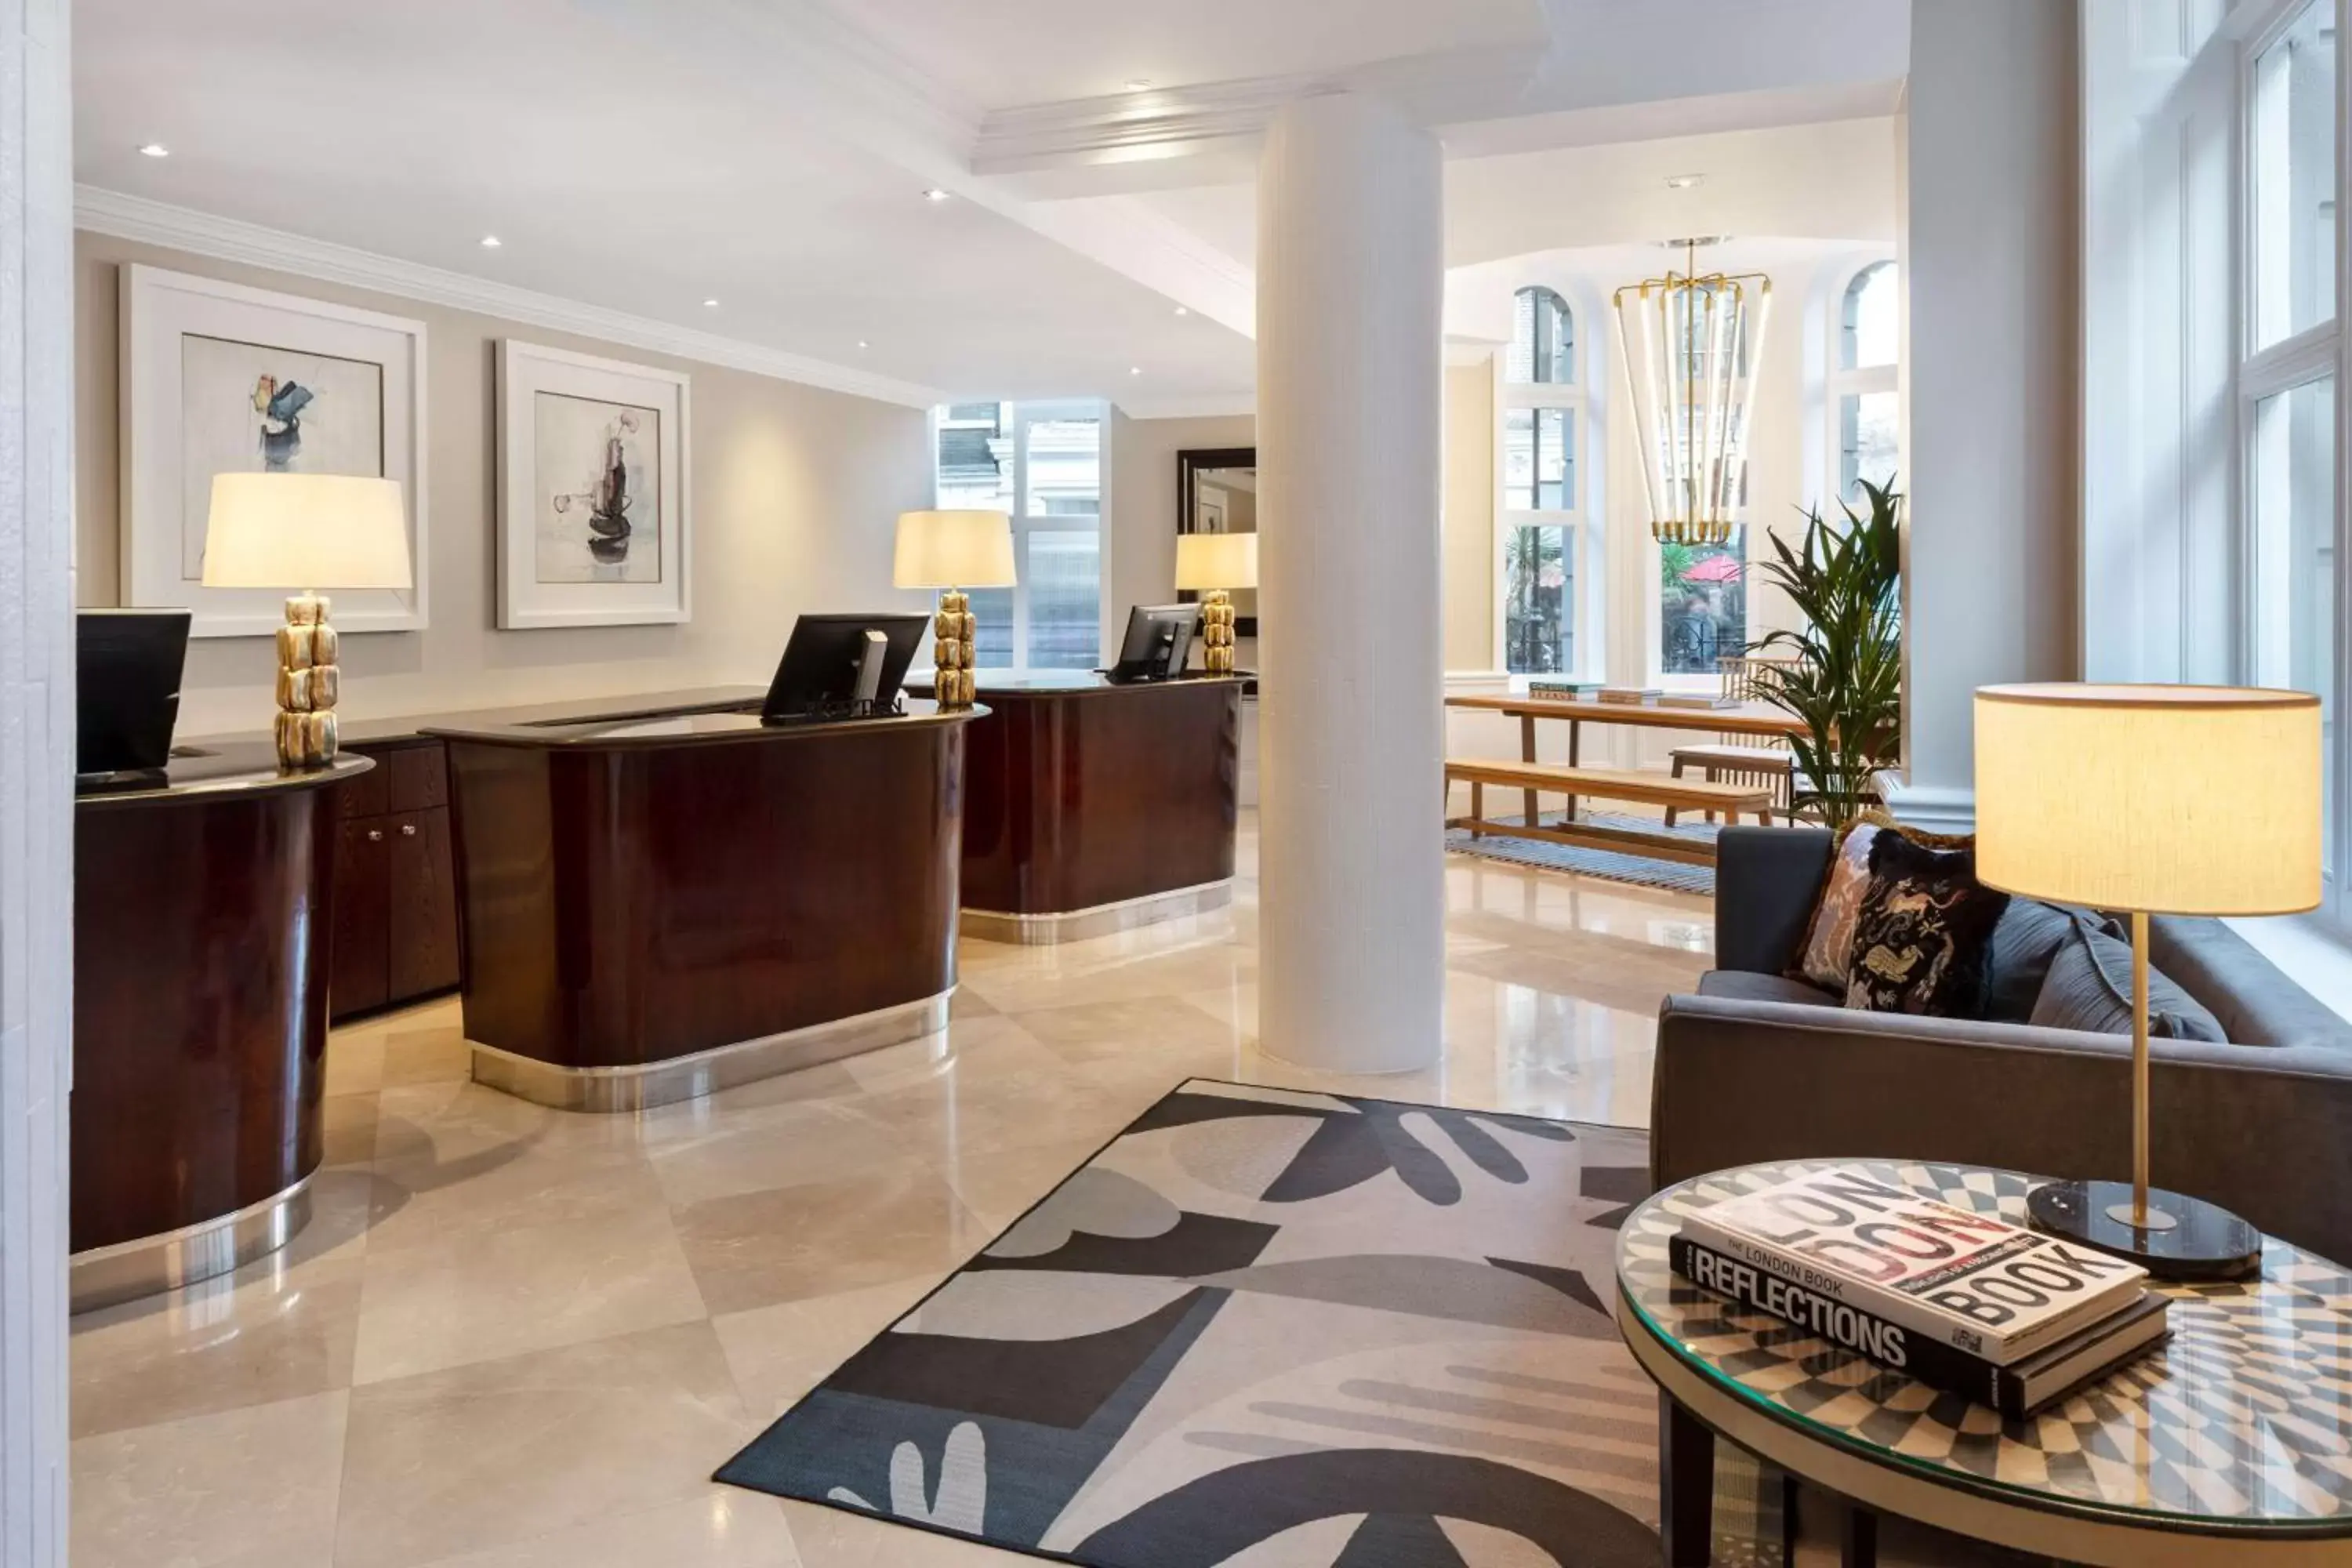 Lobby or reception, Lobby/Reception in Radisson Blu Edwardian Kenilworth Hotel, London